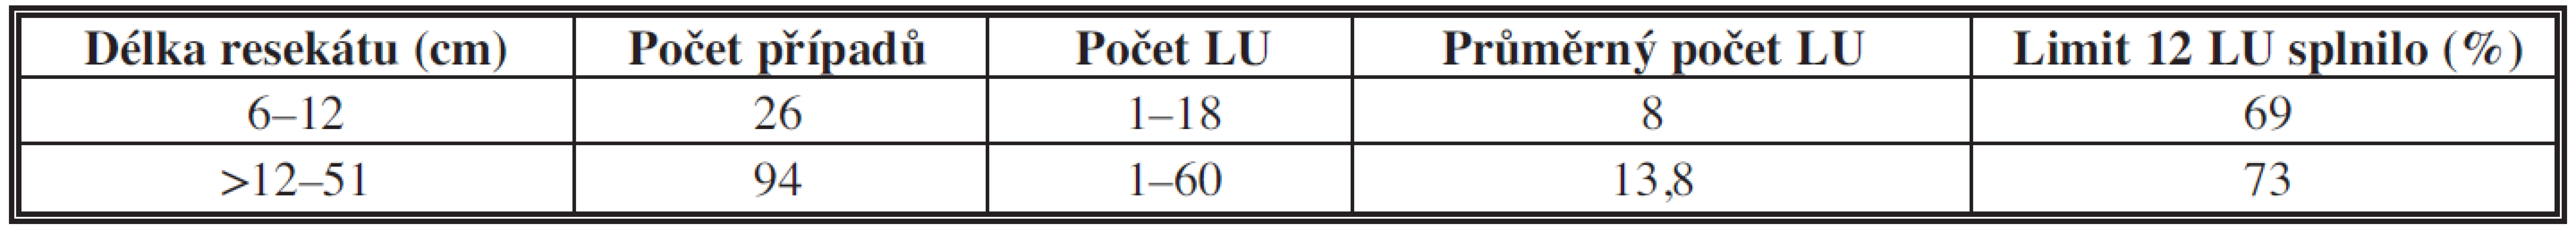 Počet lymfatických uzlin (LU) v závislosti na délce resekátu
Tab. 5: The dependency of the number of lymph nodes on the length of the resectate